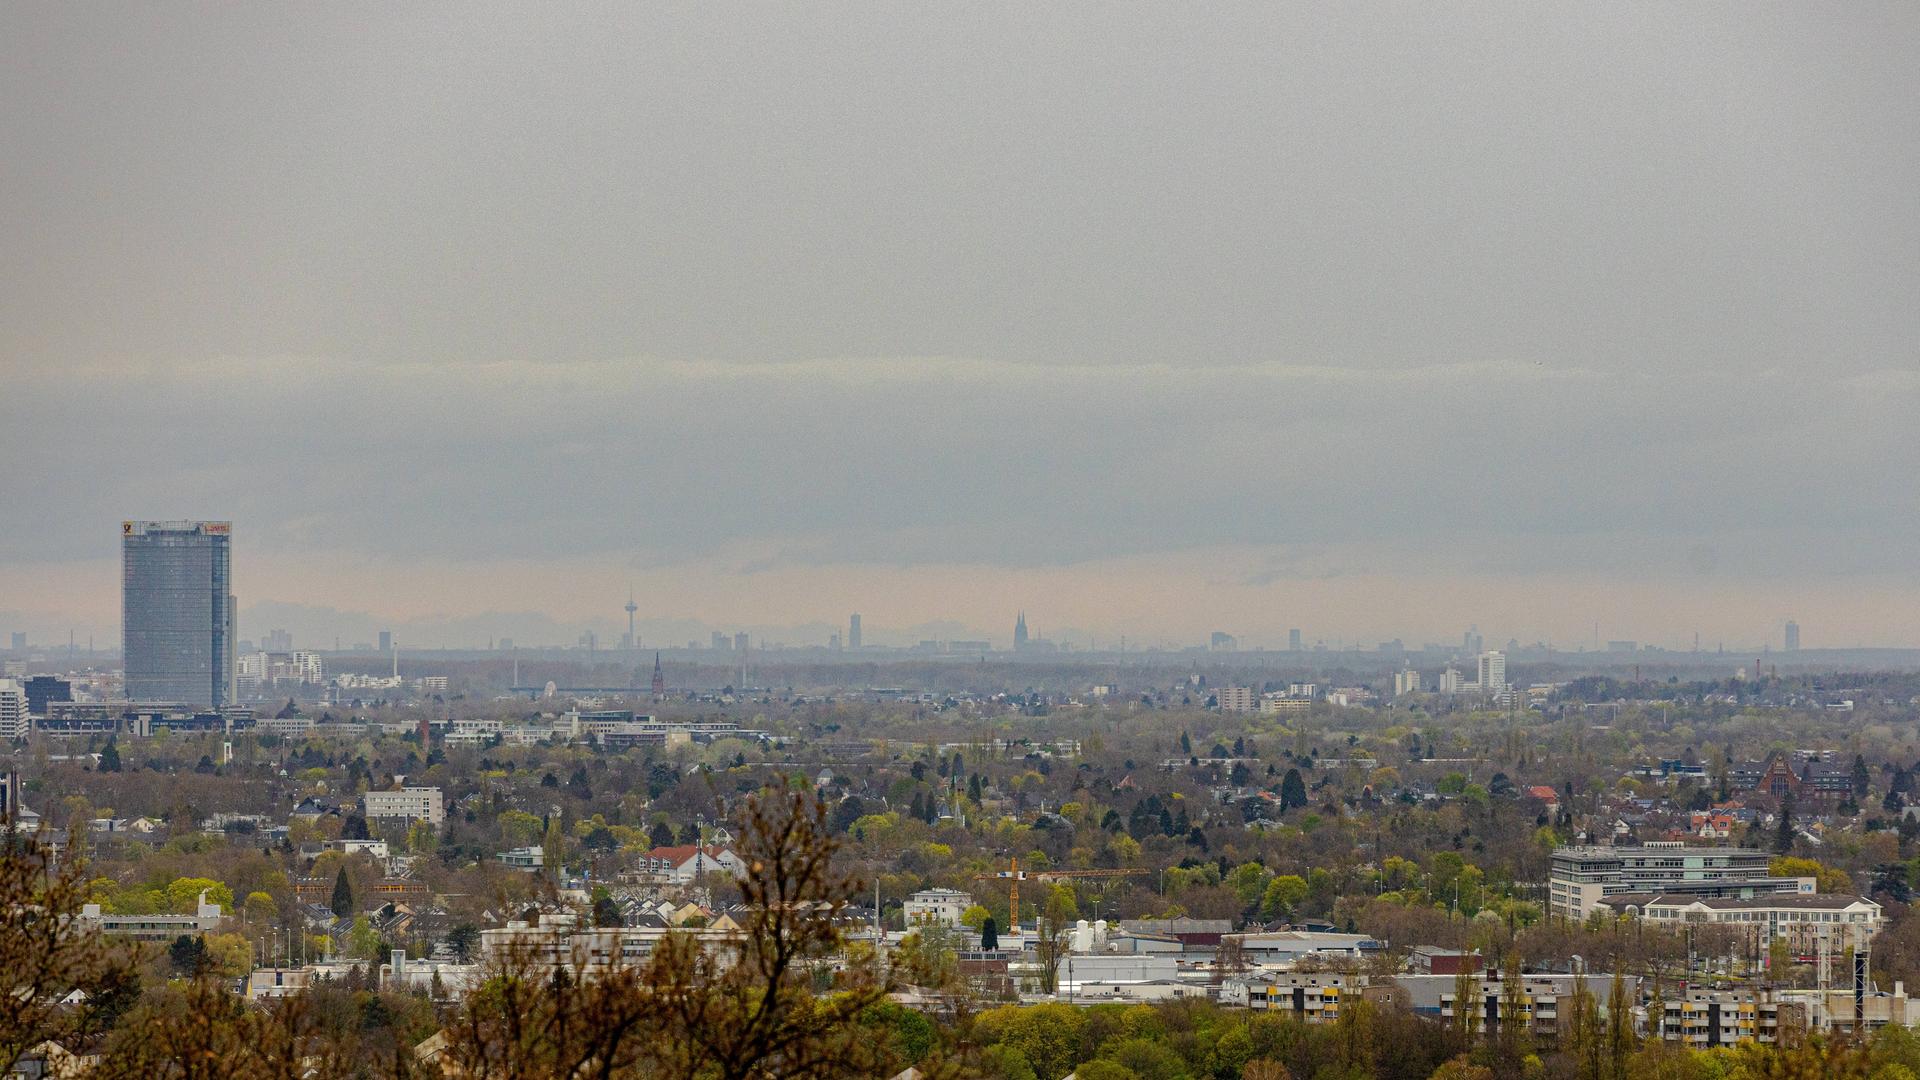 Bild mit Fernblick südlich von Bonn auf das Rheintal, Bonn und Köln. Der Himmel ist vom Saharastaub eingetrübt.